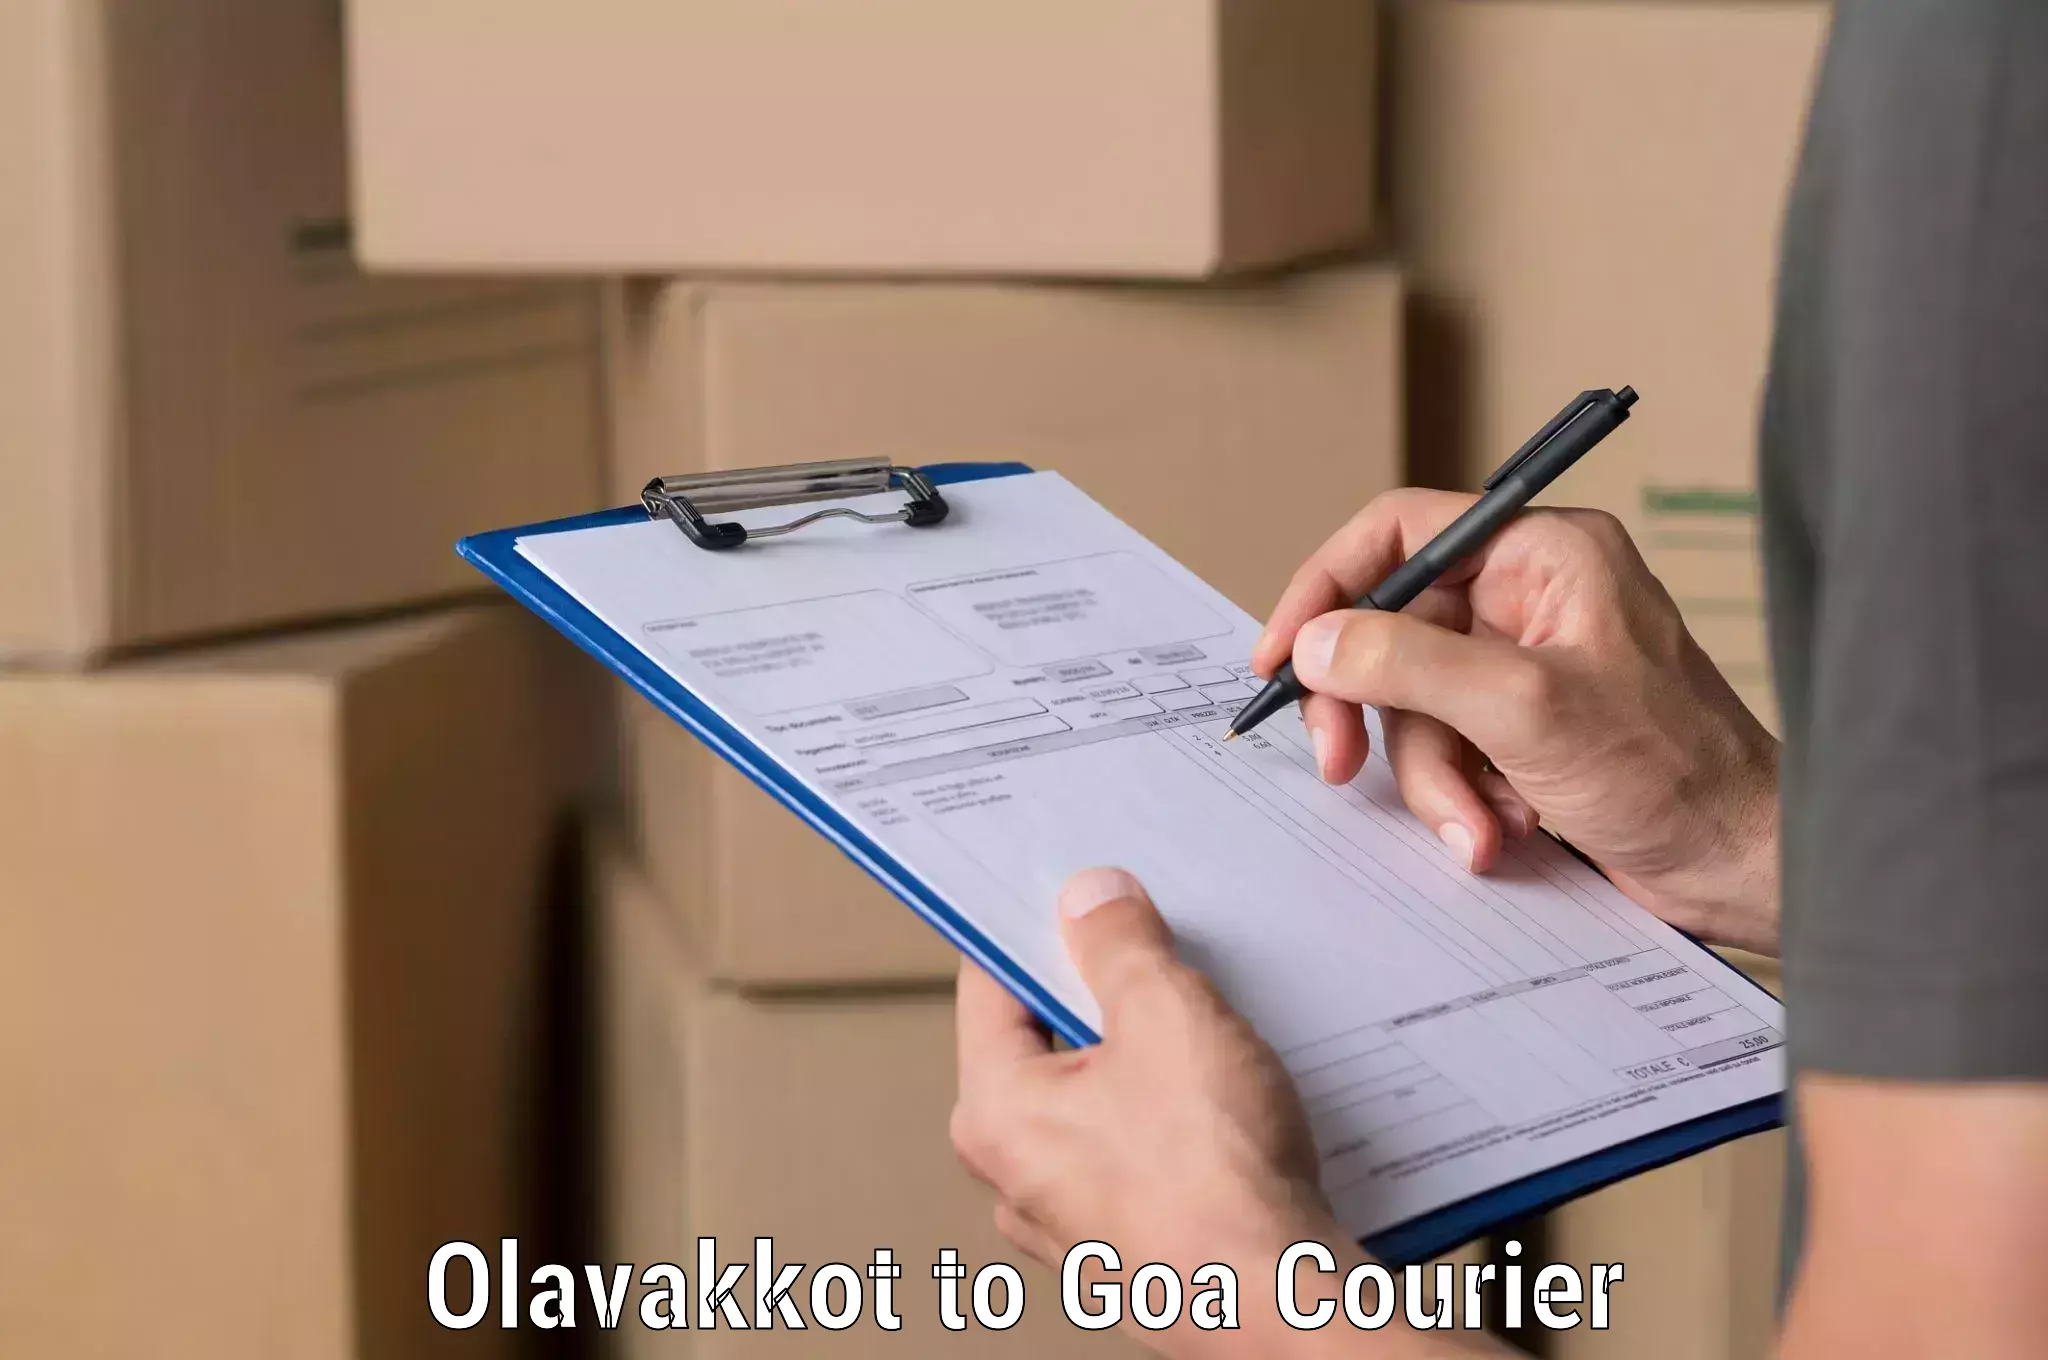 Courier service comparison Olavakkot to Goa